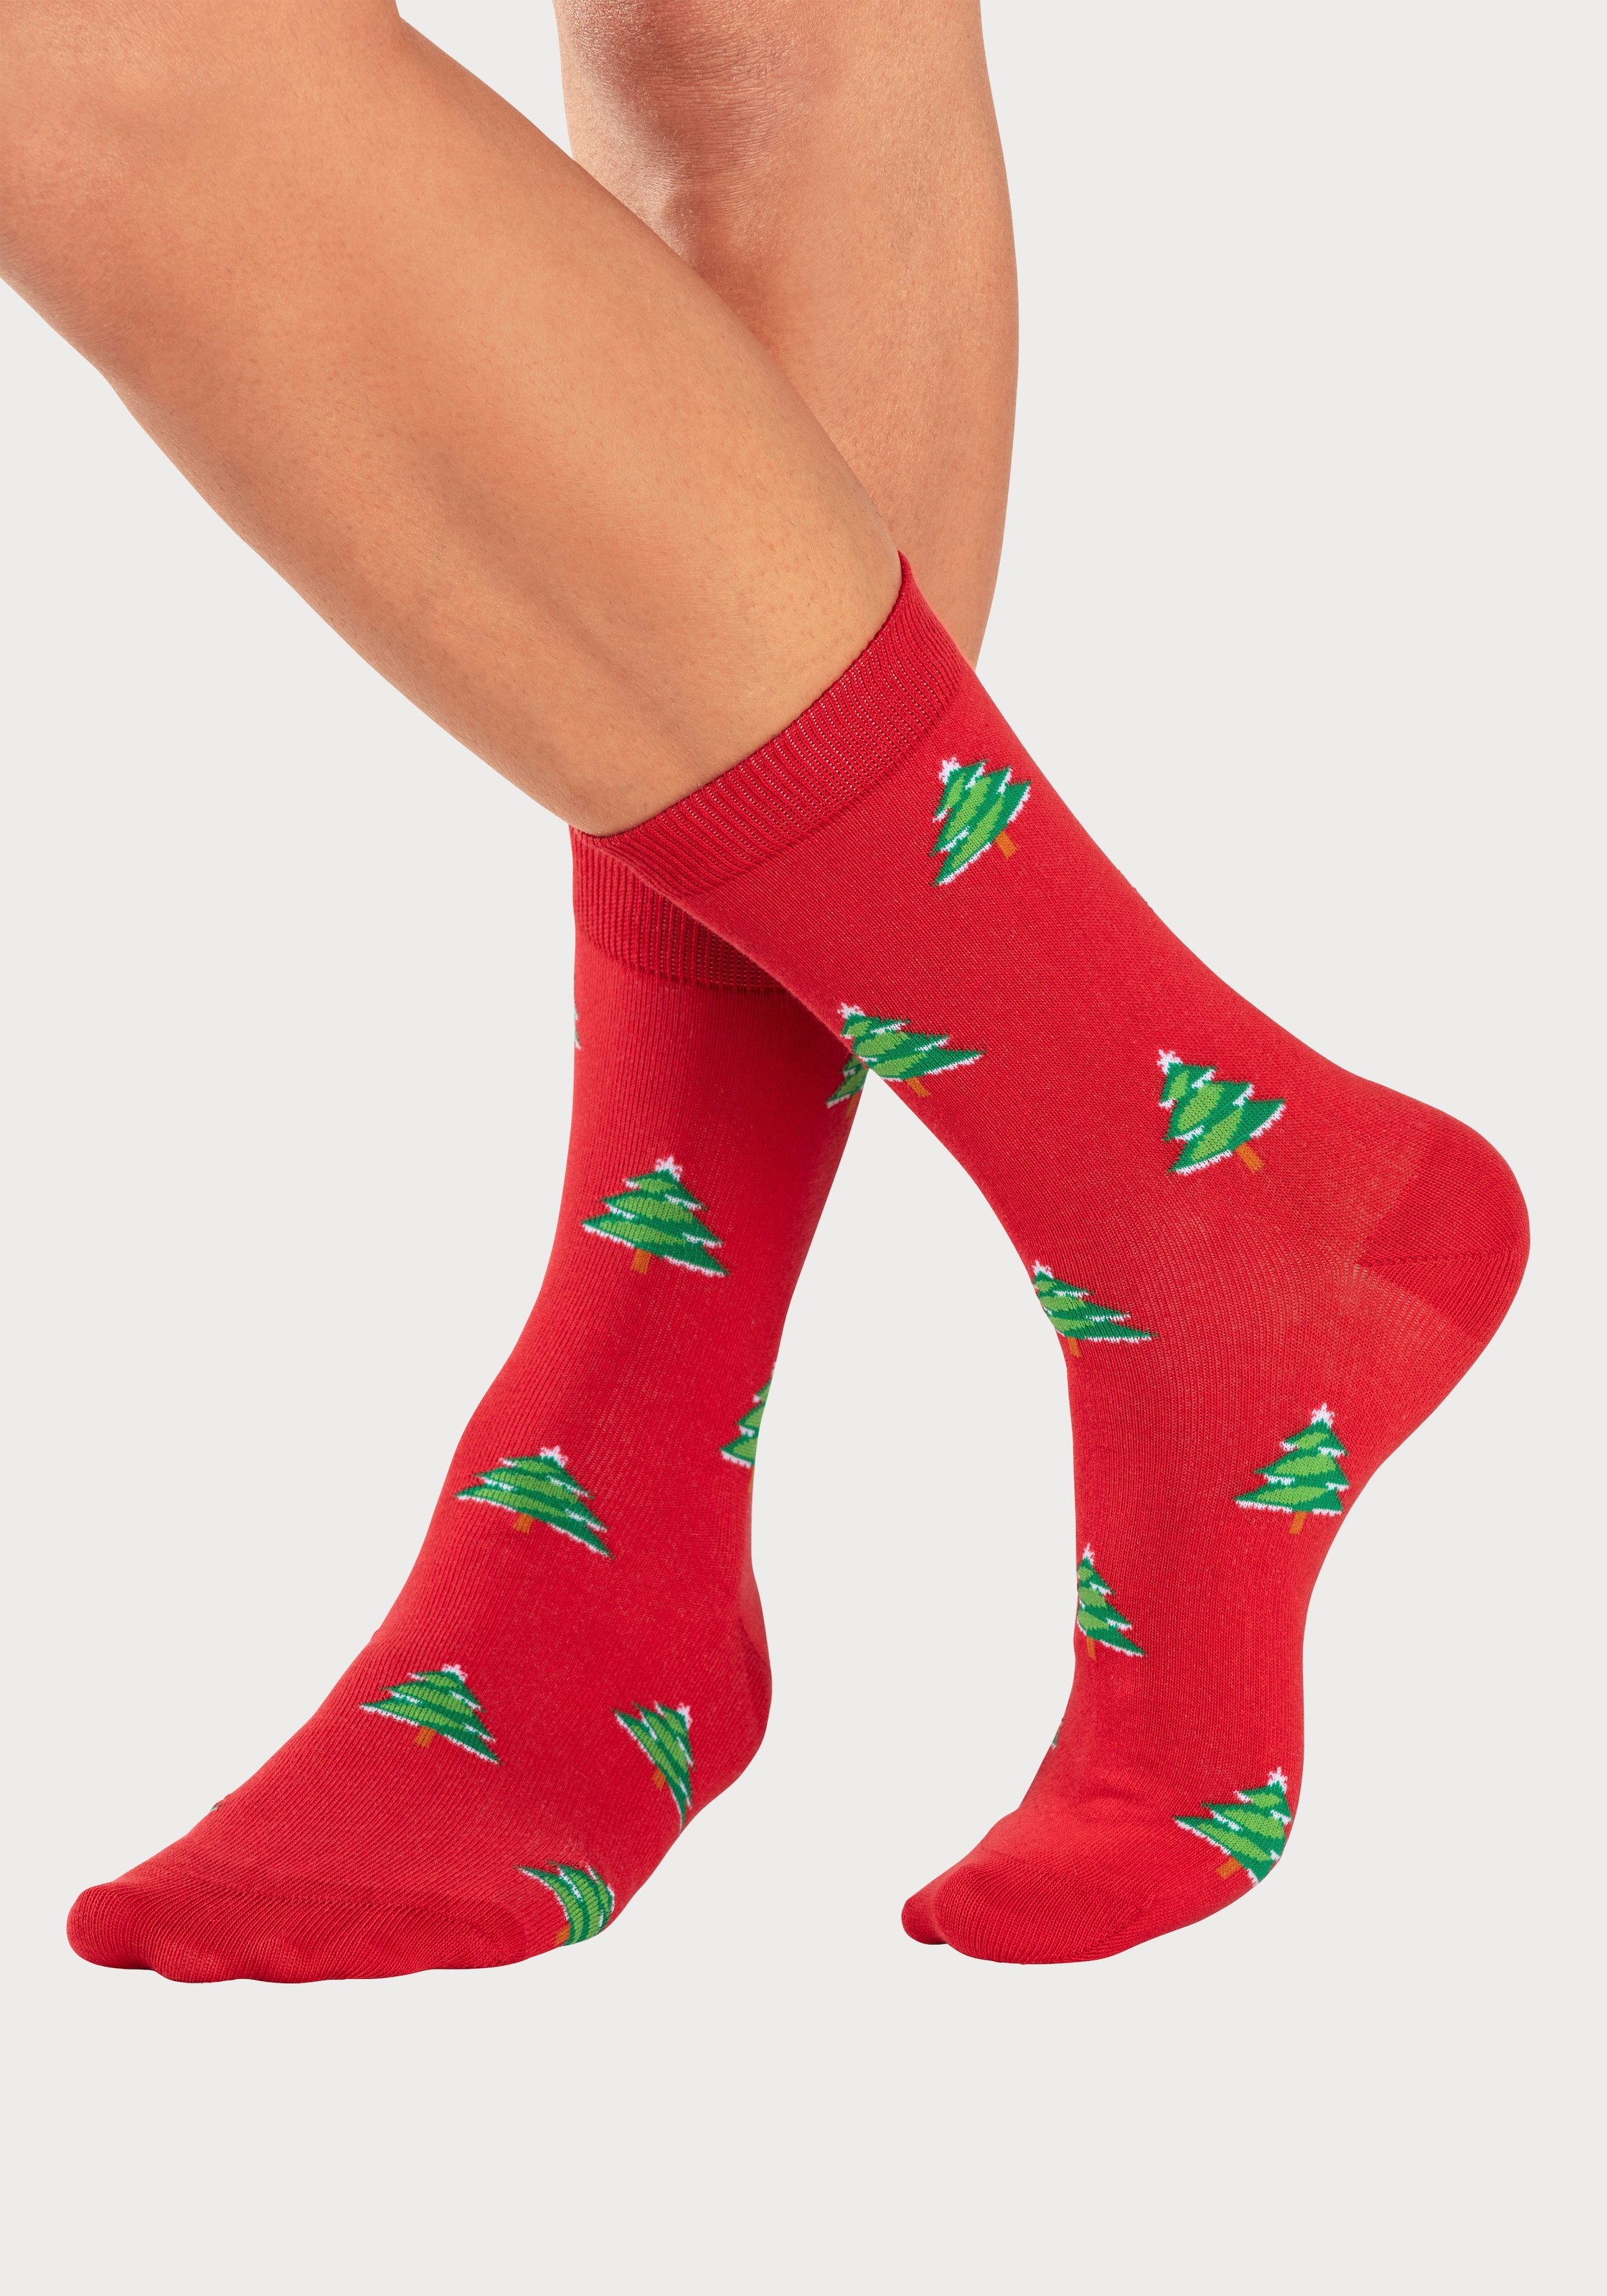 John Devin Weihnachtsmotiven mit bei Socken, Paar), online (3 unterschiedlichen OTTO